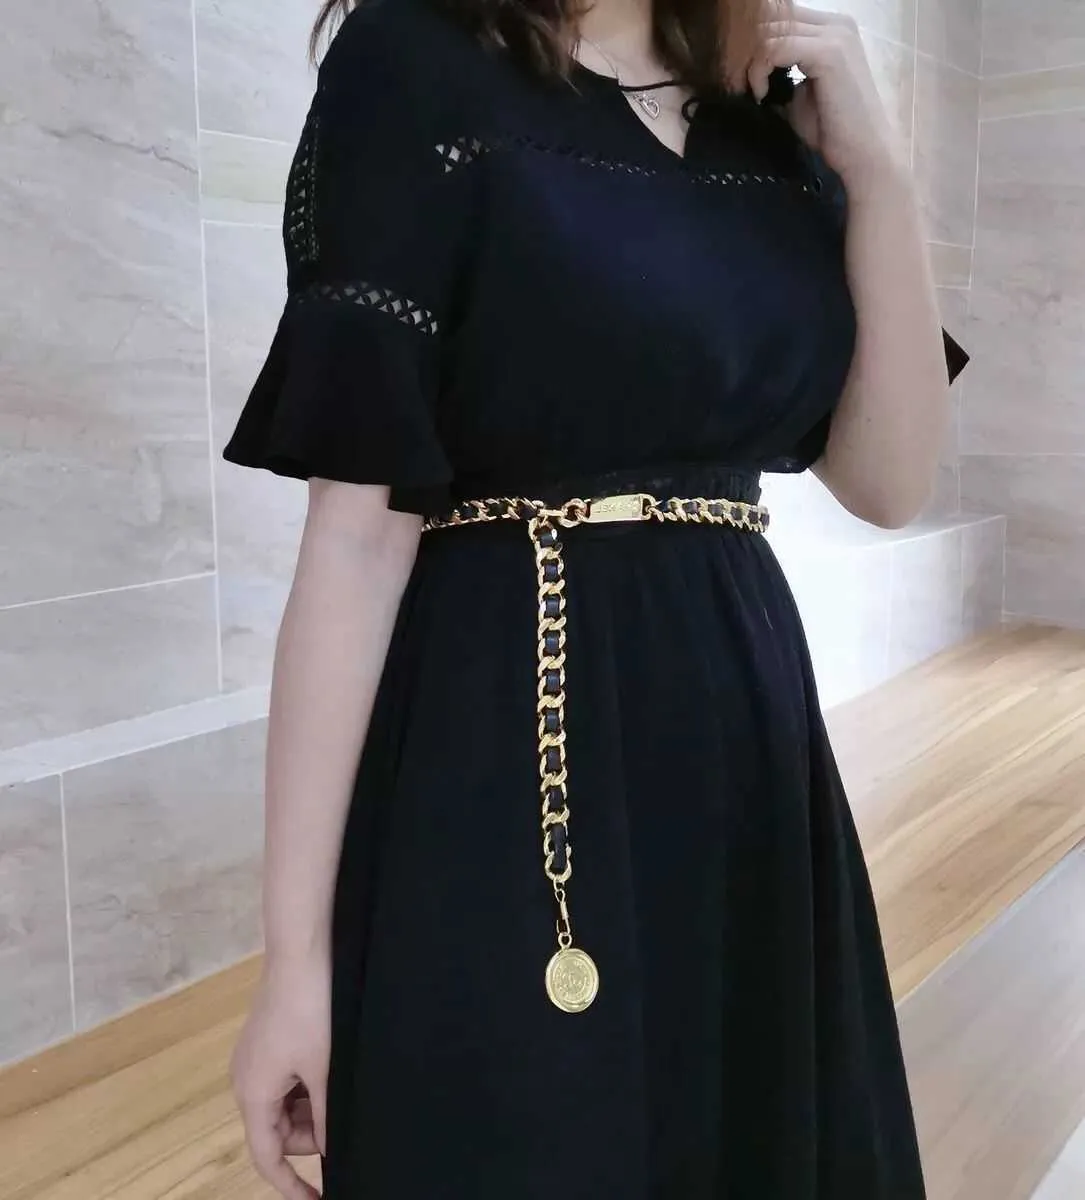 Ortaçağ Metal Bel Zincir Kot Elbise Aksesuarları Siyah Altın Zincir Vintage Bayan Deri Kemer Kolye Zincir Tasarımcı Kemerler Q0726